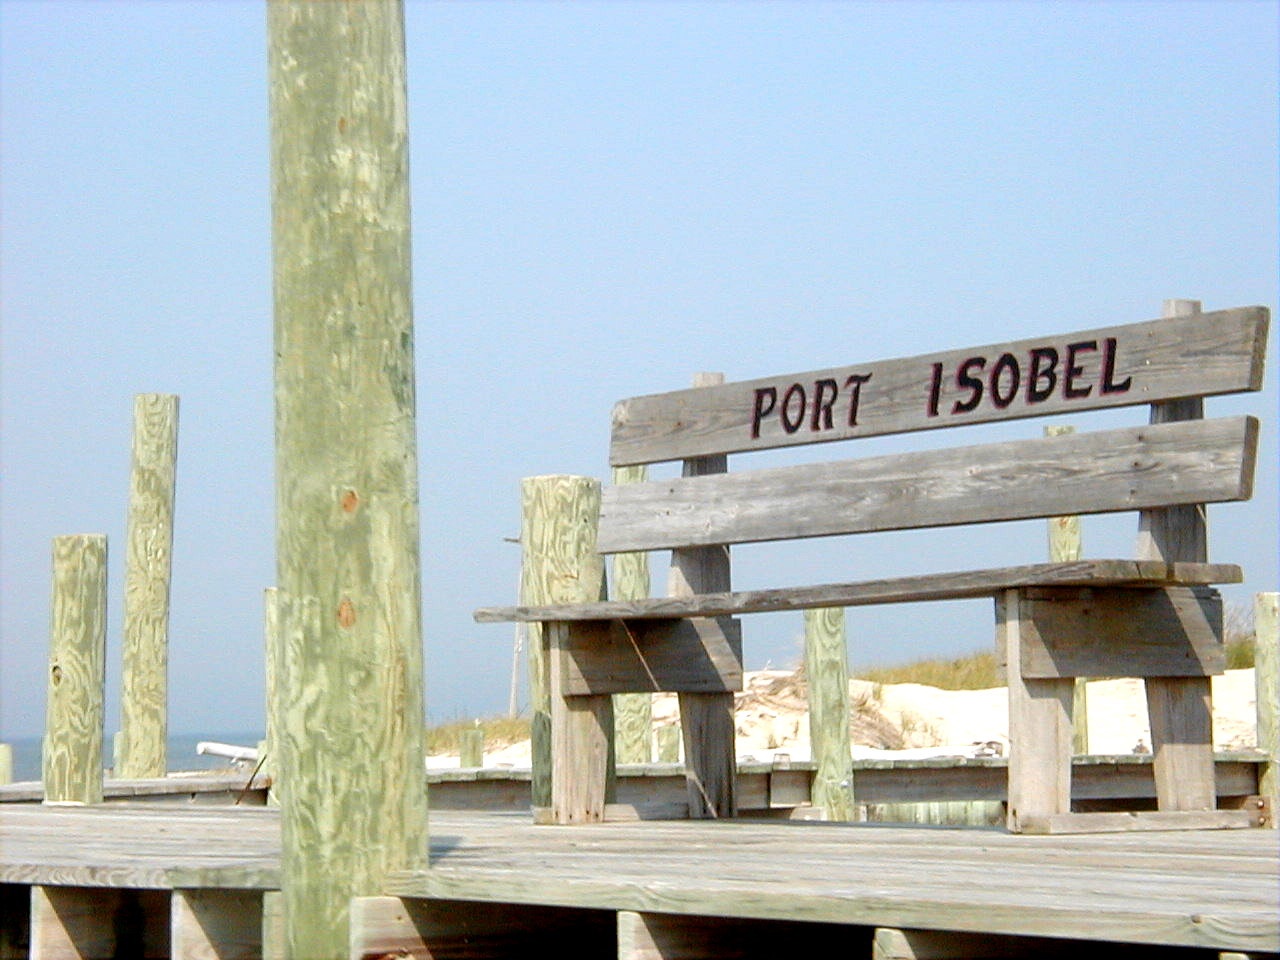 Port Isobel